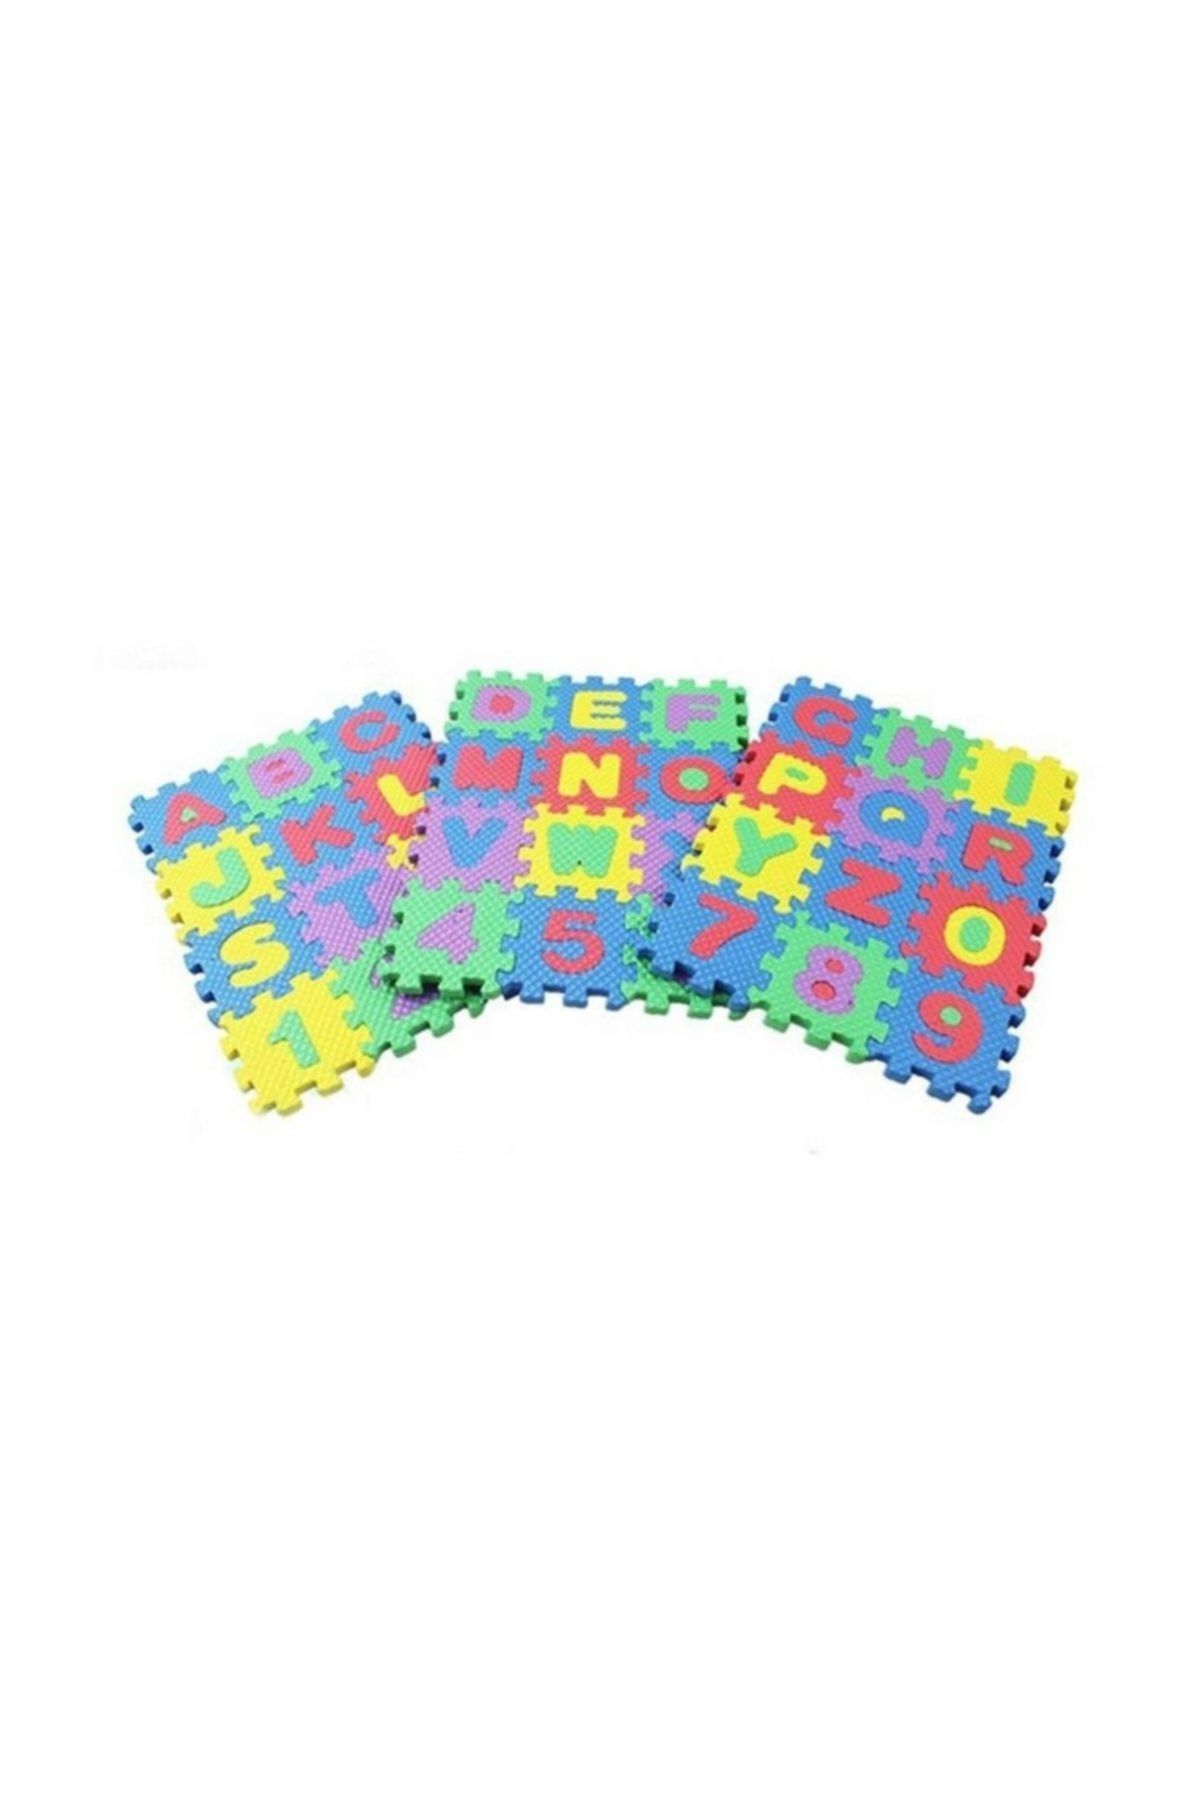 RoseRoi Çocuk Oyun Halısı Oyun Matı Yer Kaplama Puzzle Mats Sünger Harfli Rakamlı 36 Parça